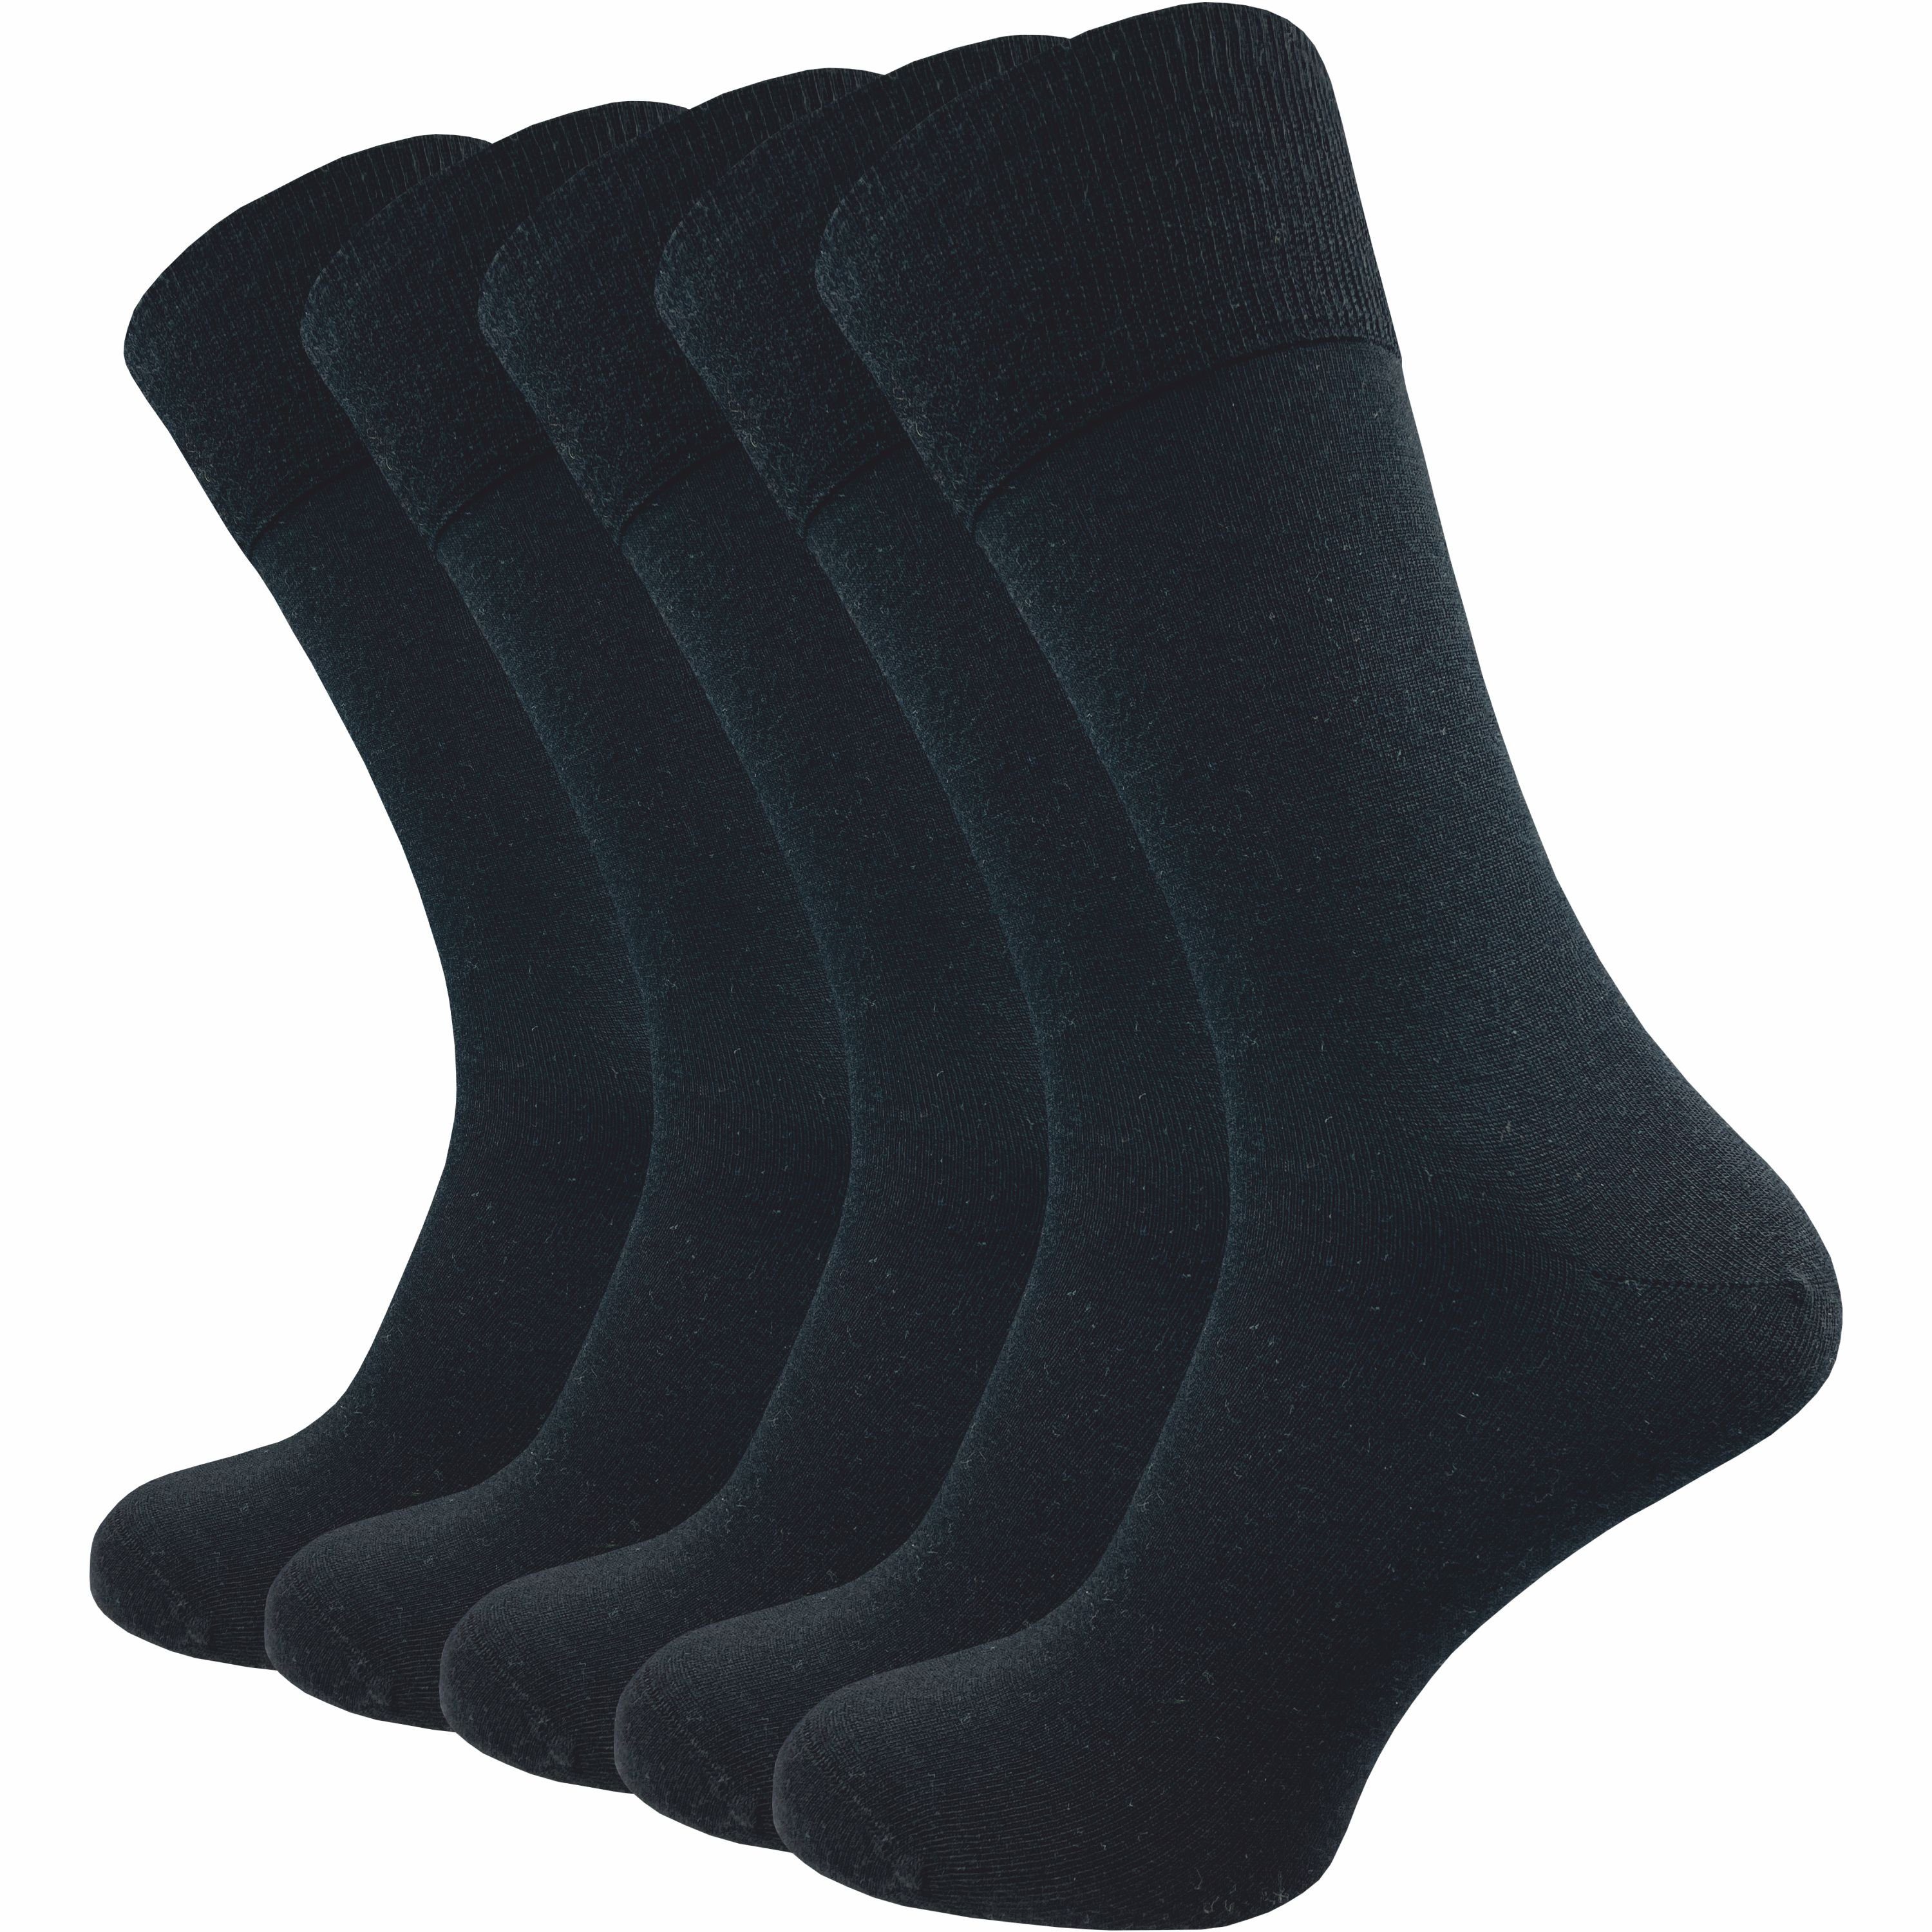 GAWILO Businesssocken für Herren aus 64% Schurwolle - Klimaregulierende Merino Шкарпетки (5 Paar) Шкарпетки aus Merino Wolle kühlen im Sommer und wärmen im Winter